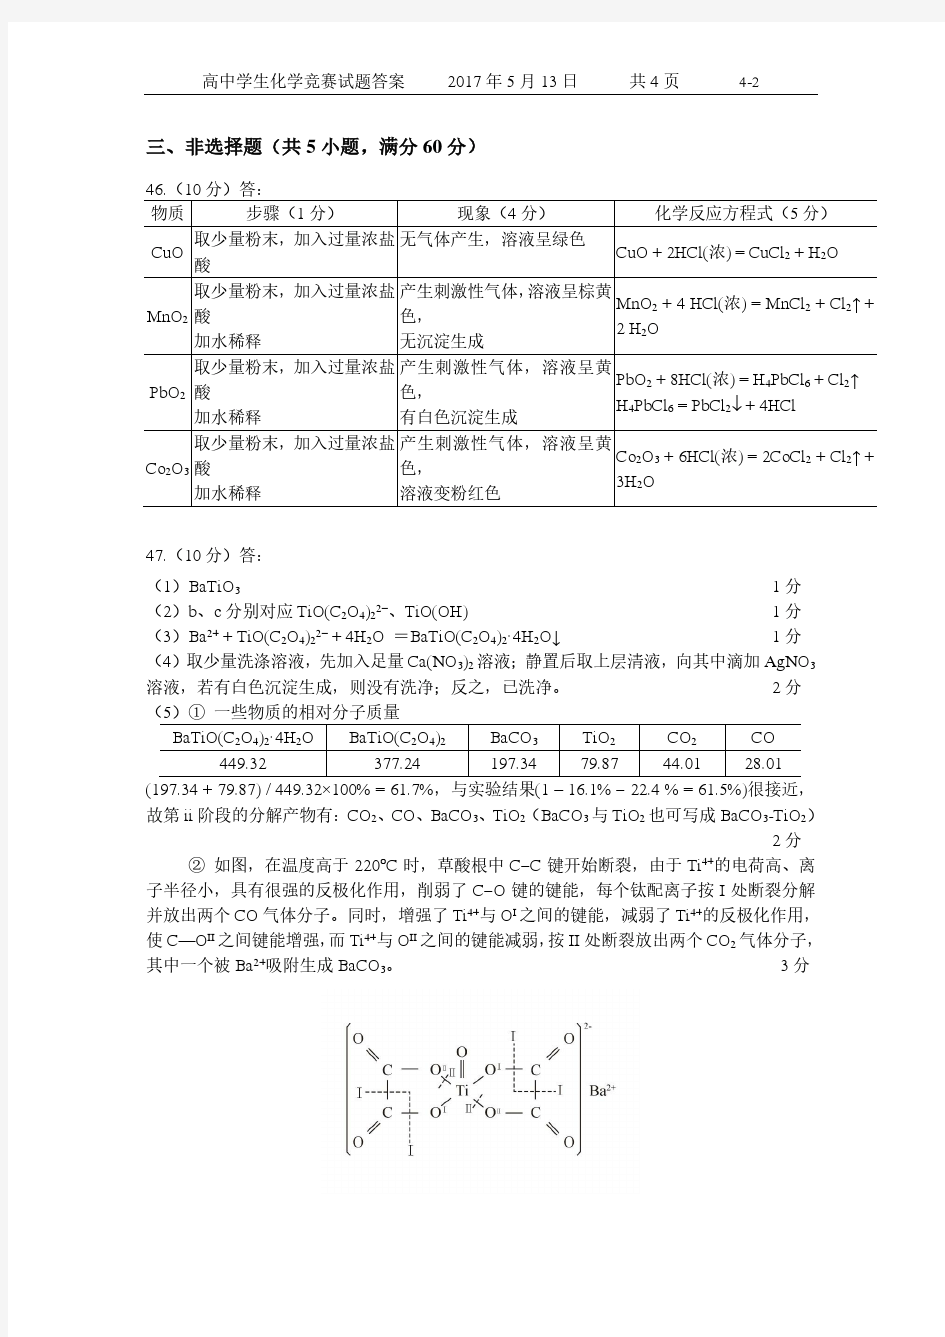 2017年广东和广西高中学生化学竞赛试题(正式题的答案)